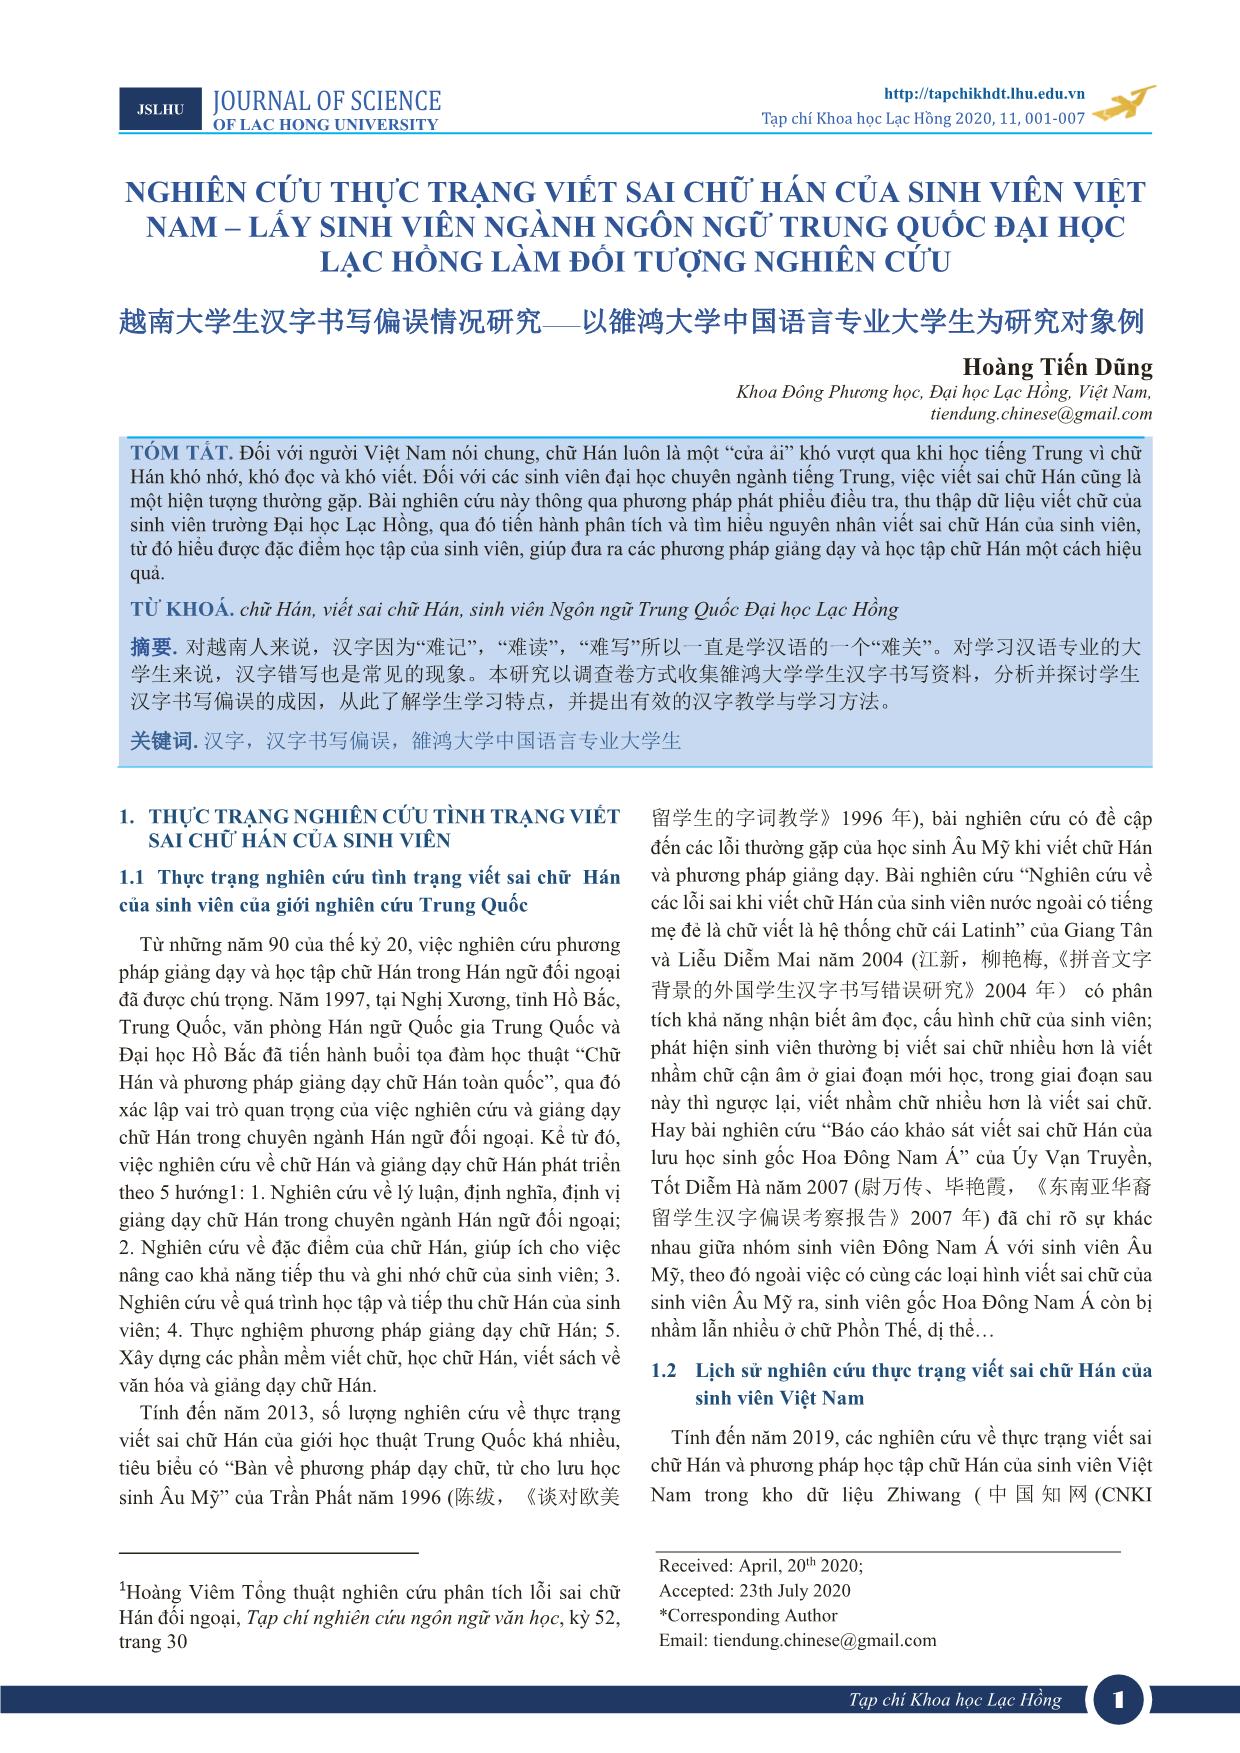 Nghiên cứu thực trạng viết sai chữ Hán của sinh viên Việt Nam - lấy sinh viên ngành ngôn ngữ Trung Quốc Đại học Lạc Hồng làm đối tượng nghiên cứu trang 1